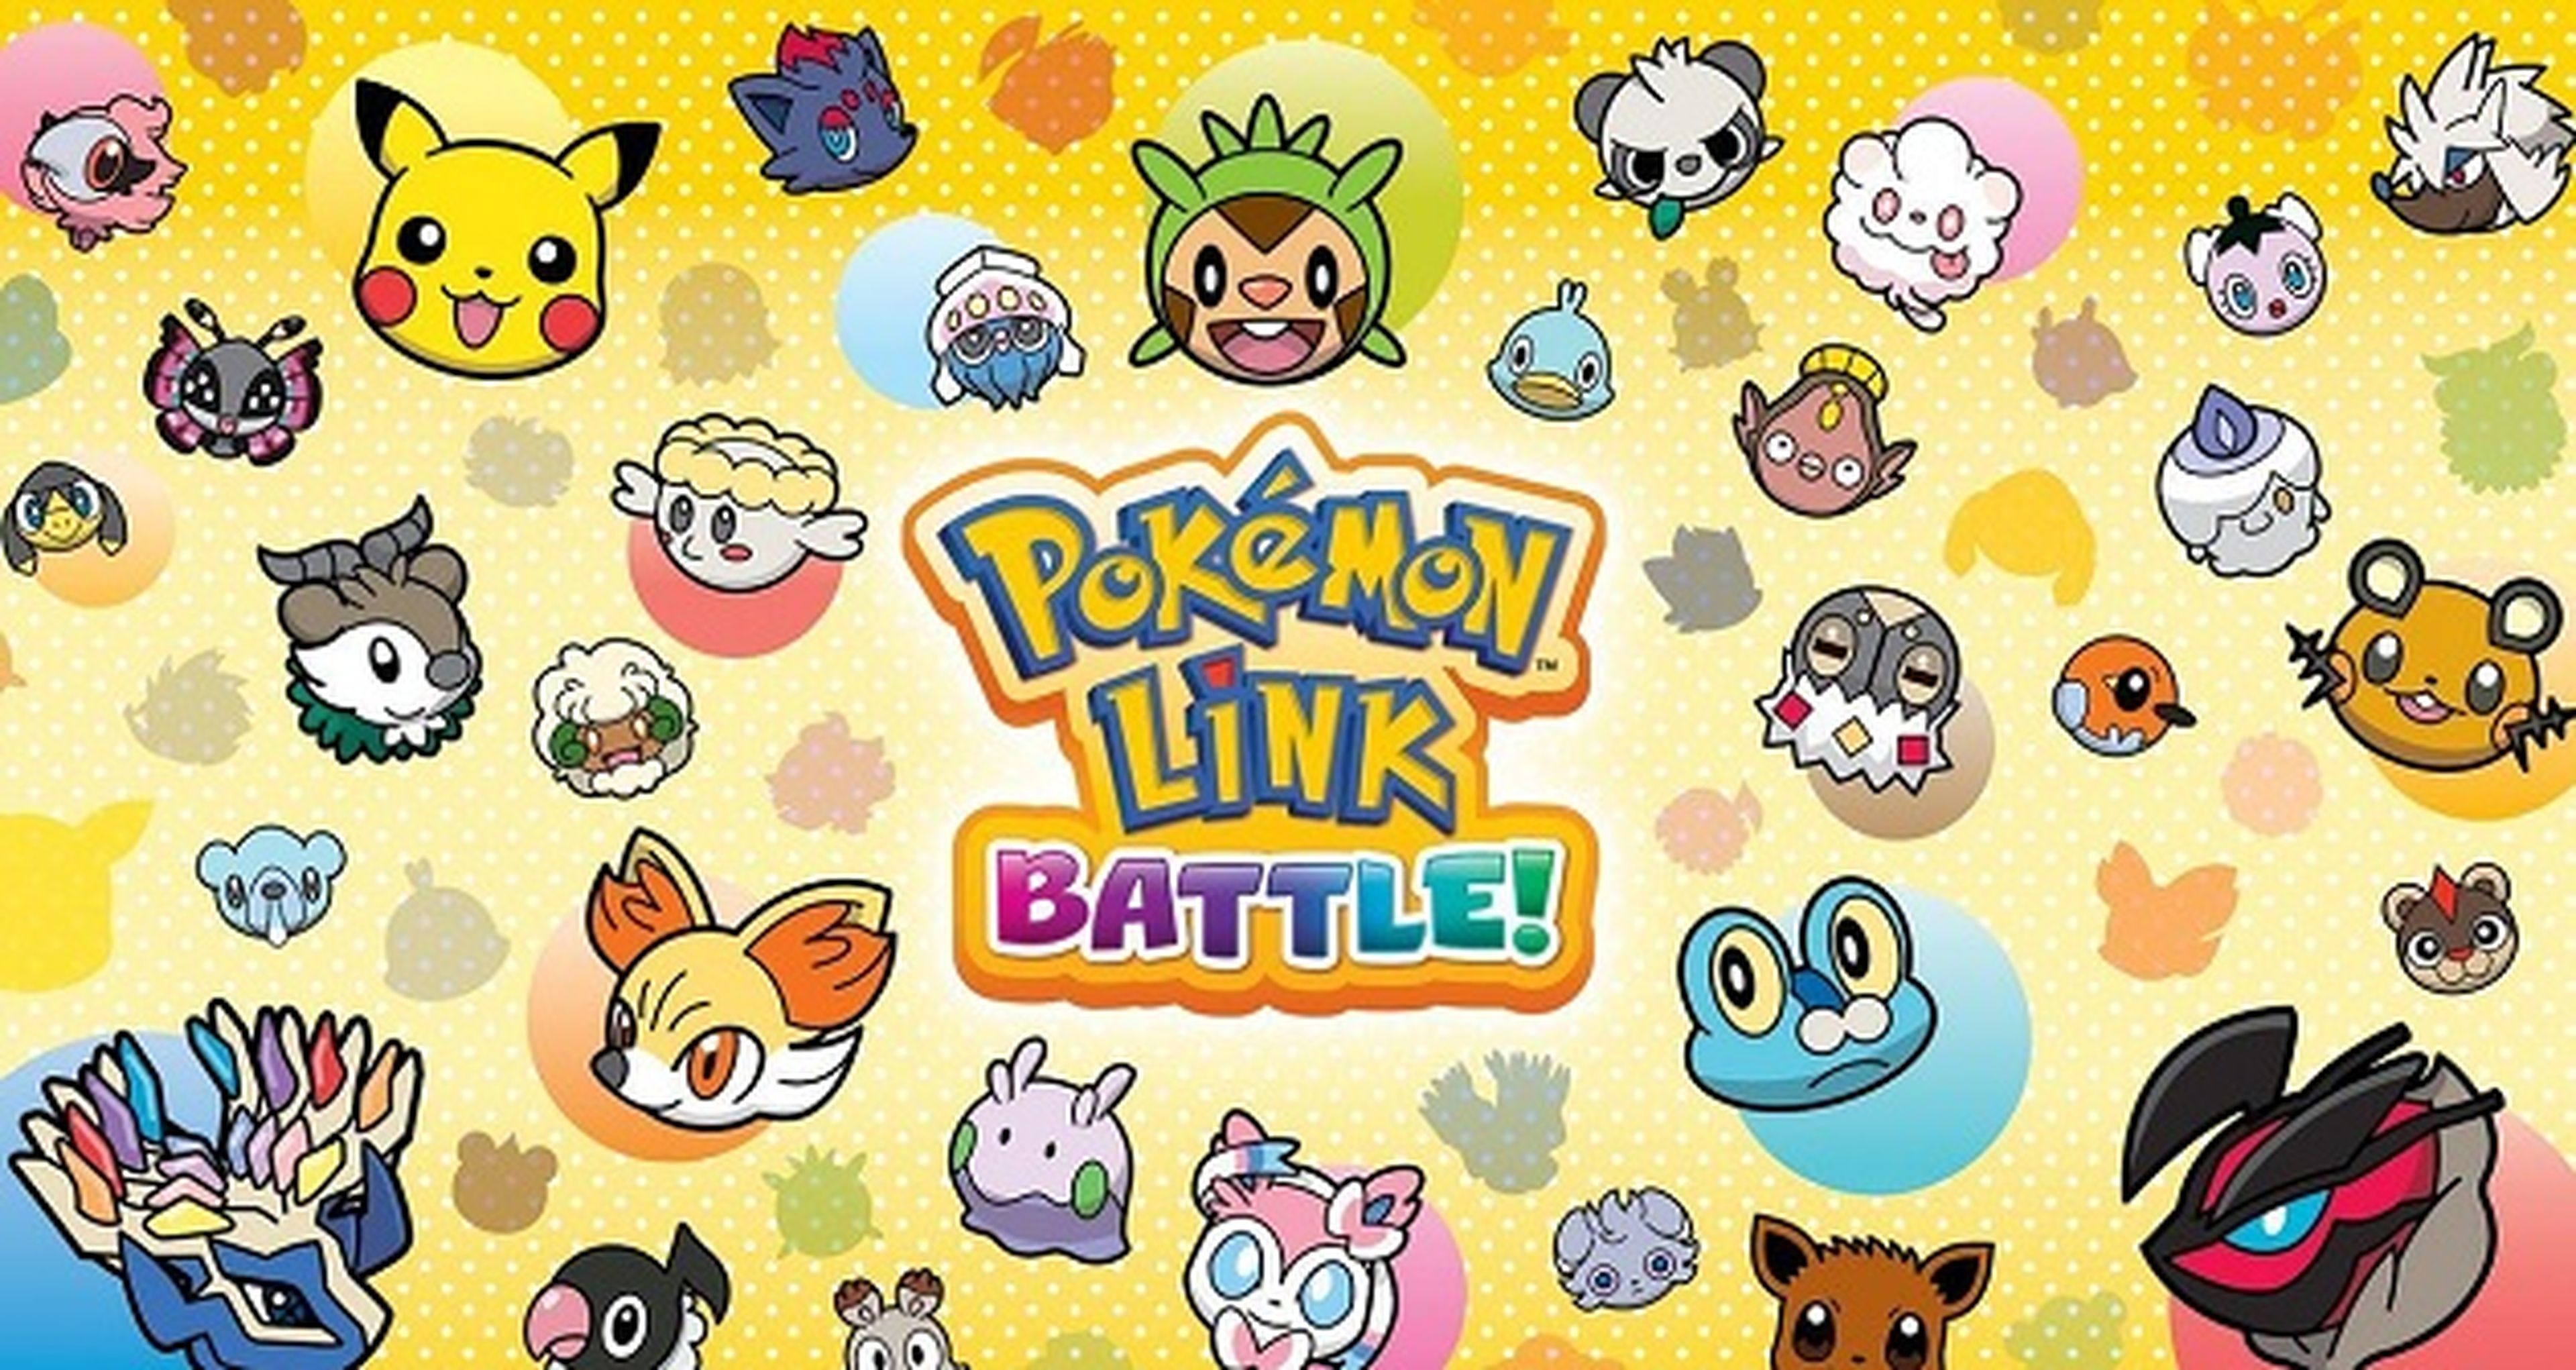 Fecha y precio de Pokémon Link Battle!